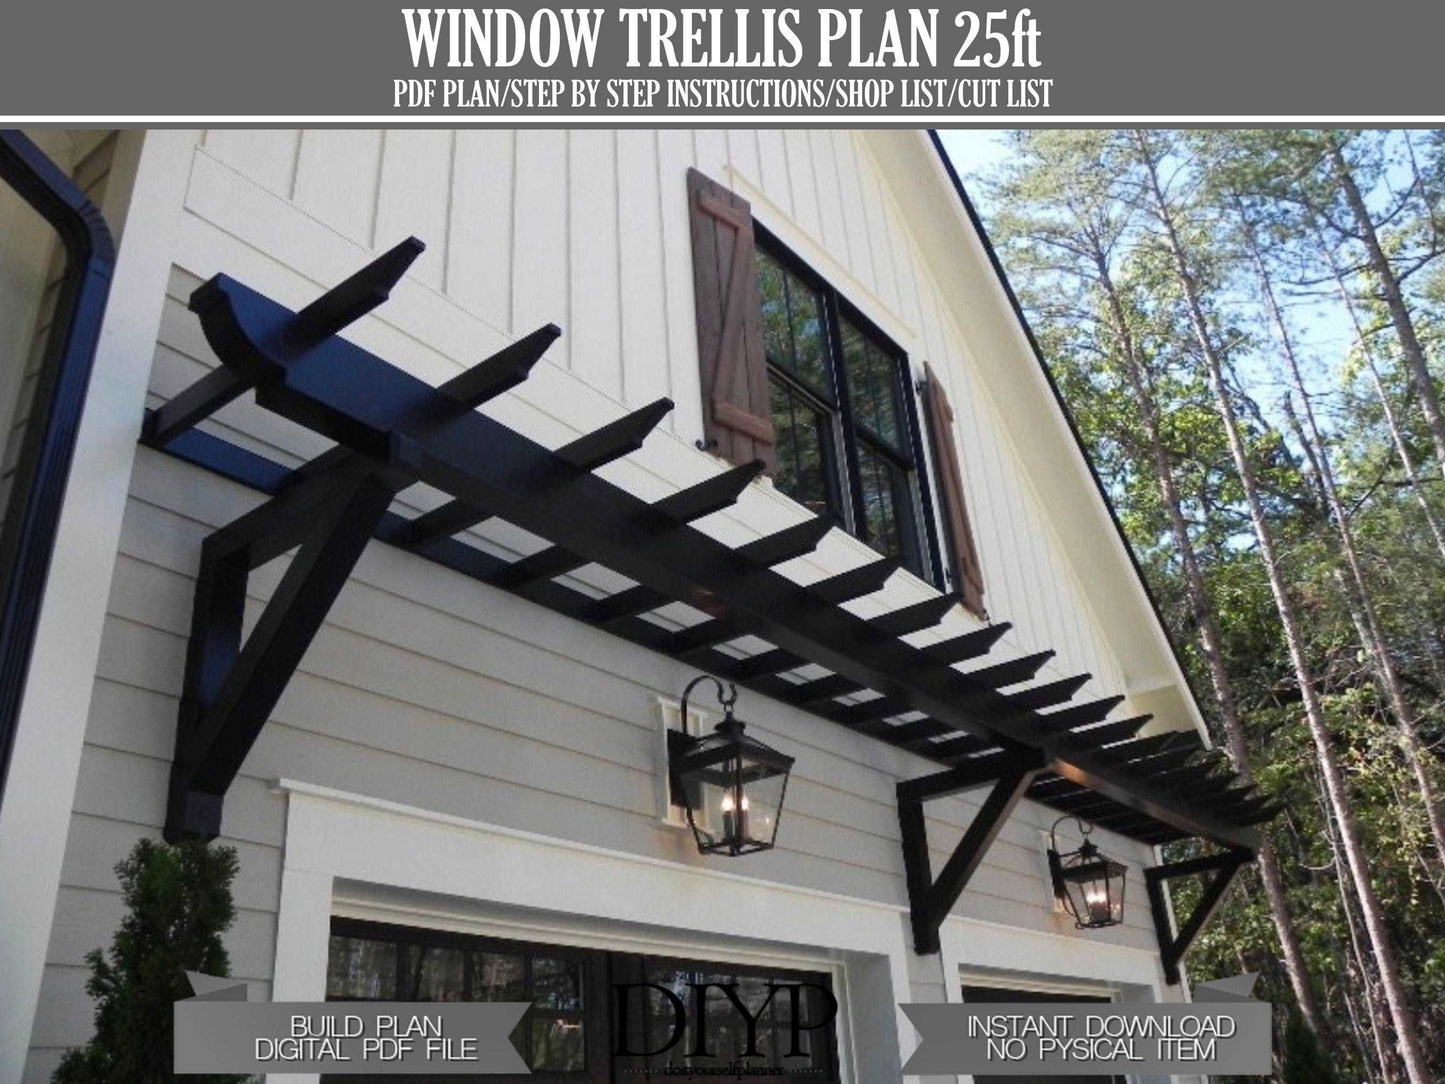 25ft Trellis plans - Windows trellis Plans - Wood windows door pergola - attached pergola plans